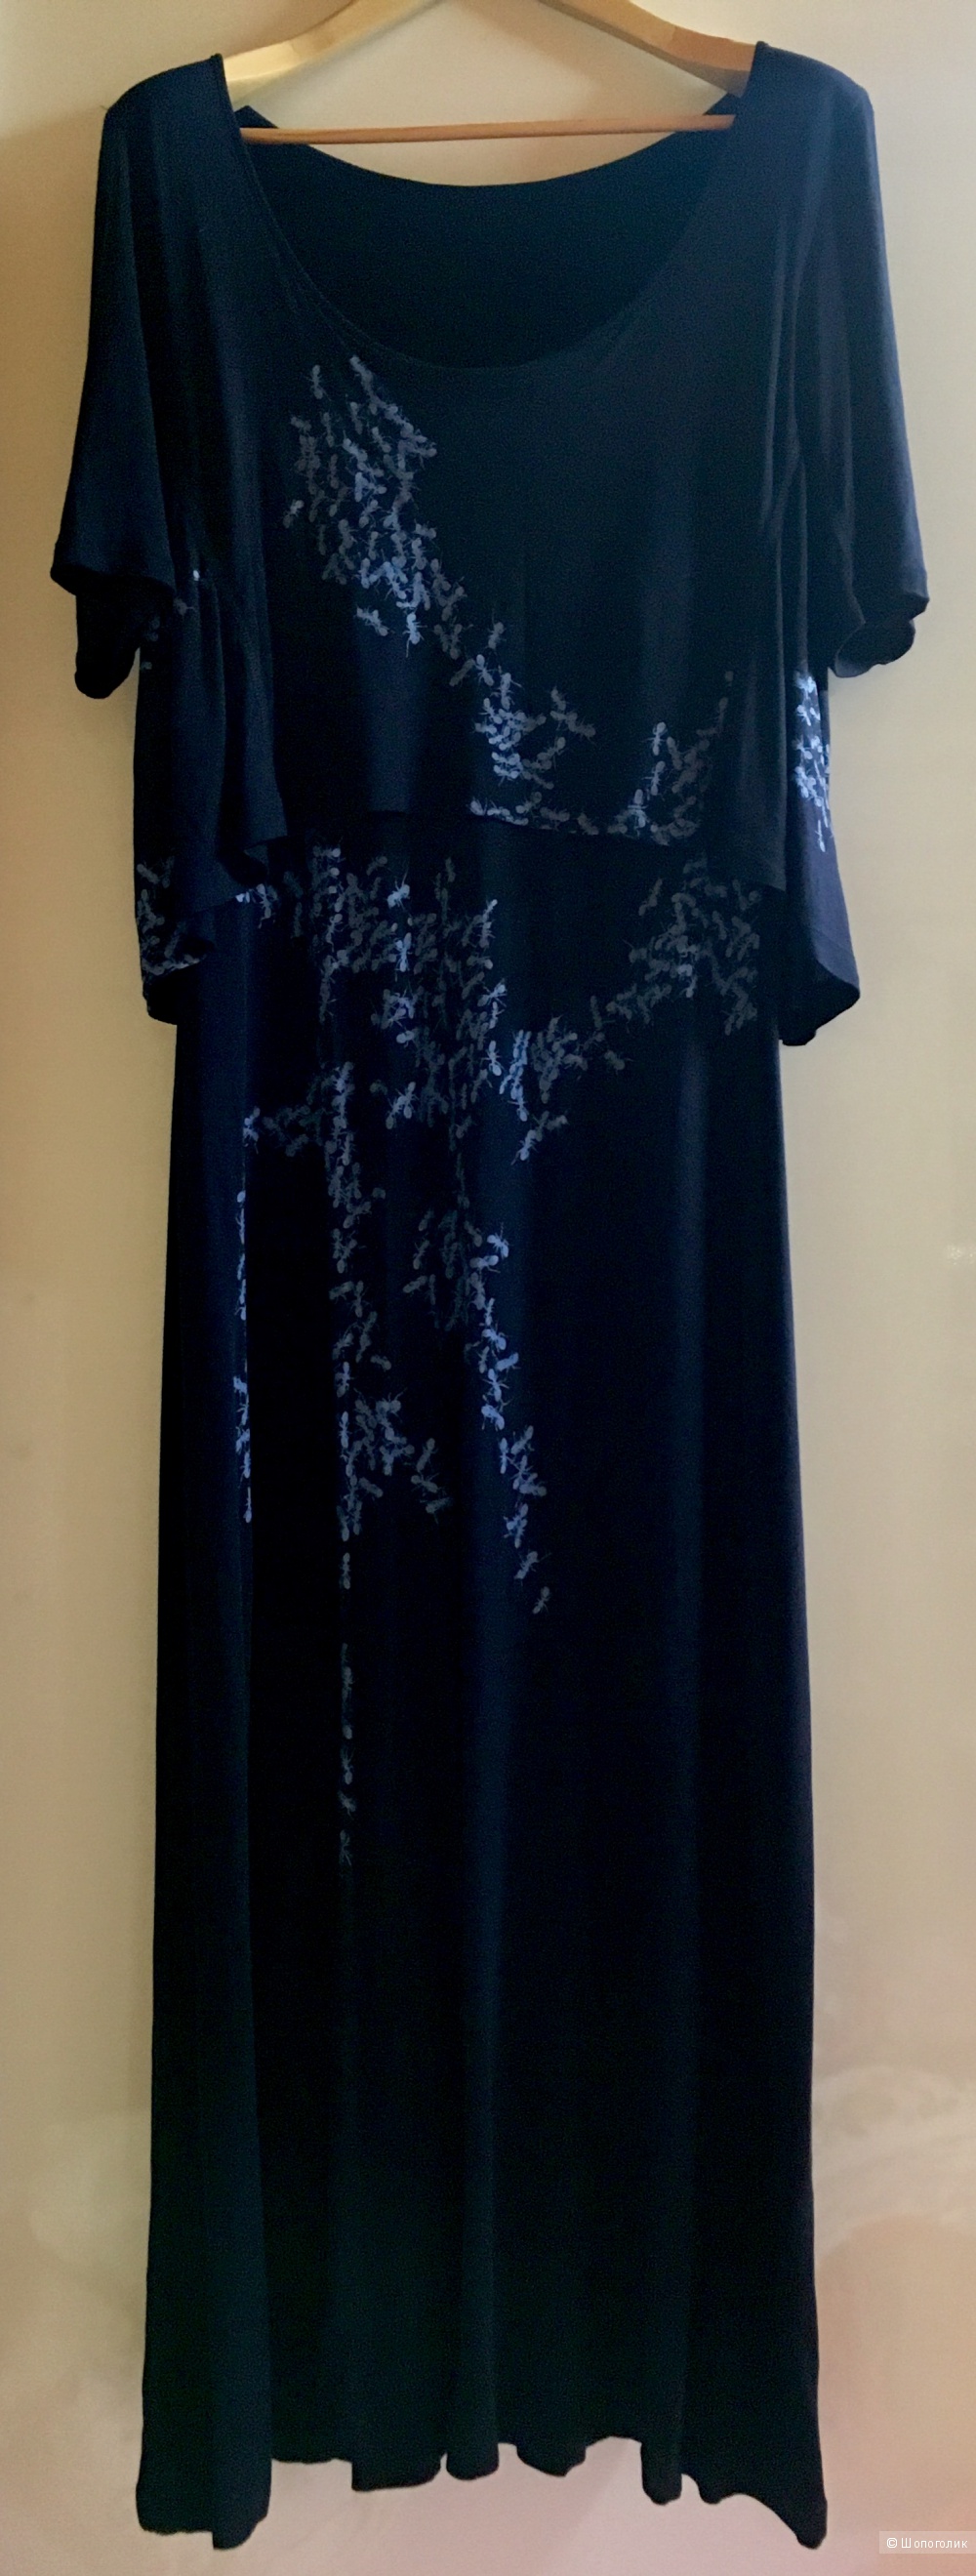 Isabel de Pedro новое трикотажное платье 52-54-56 рос.размер